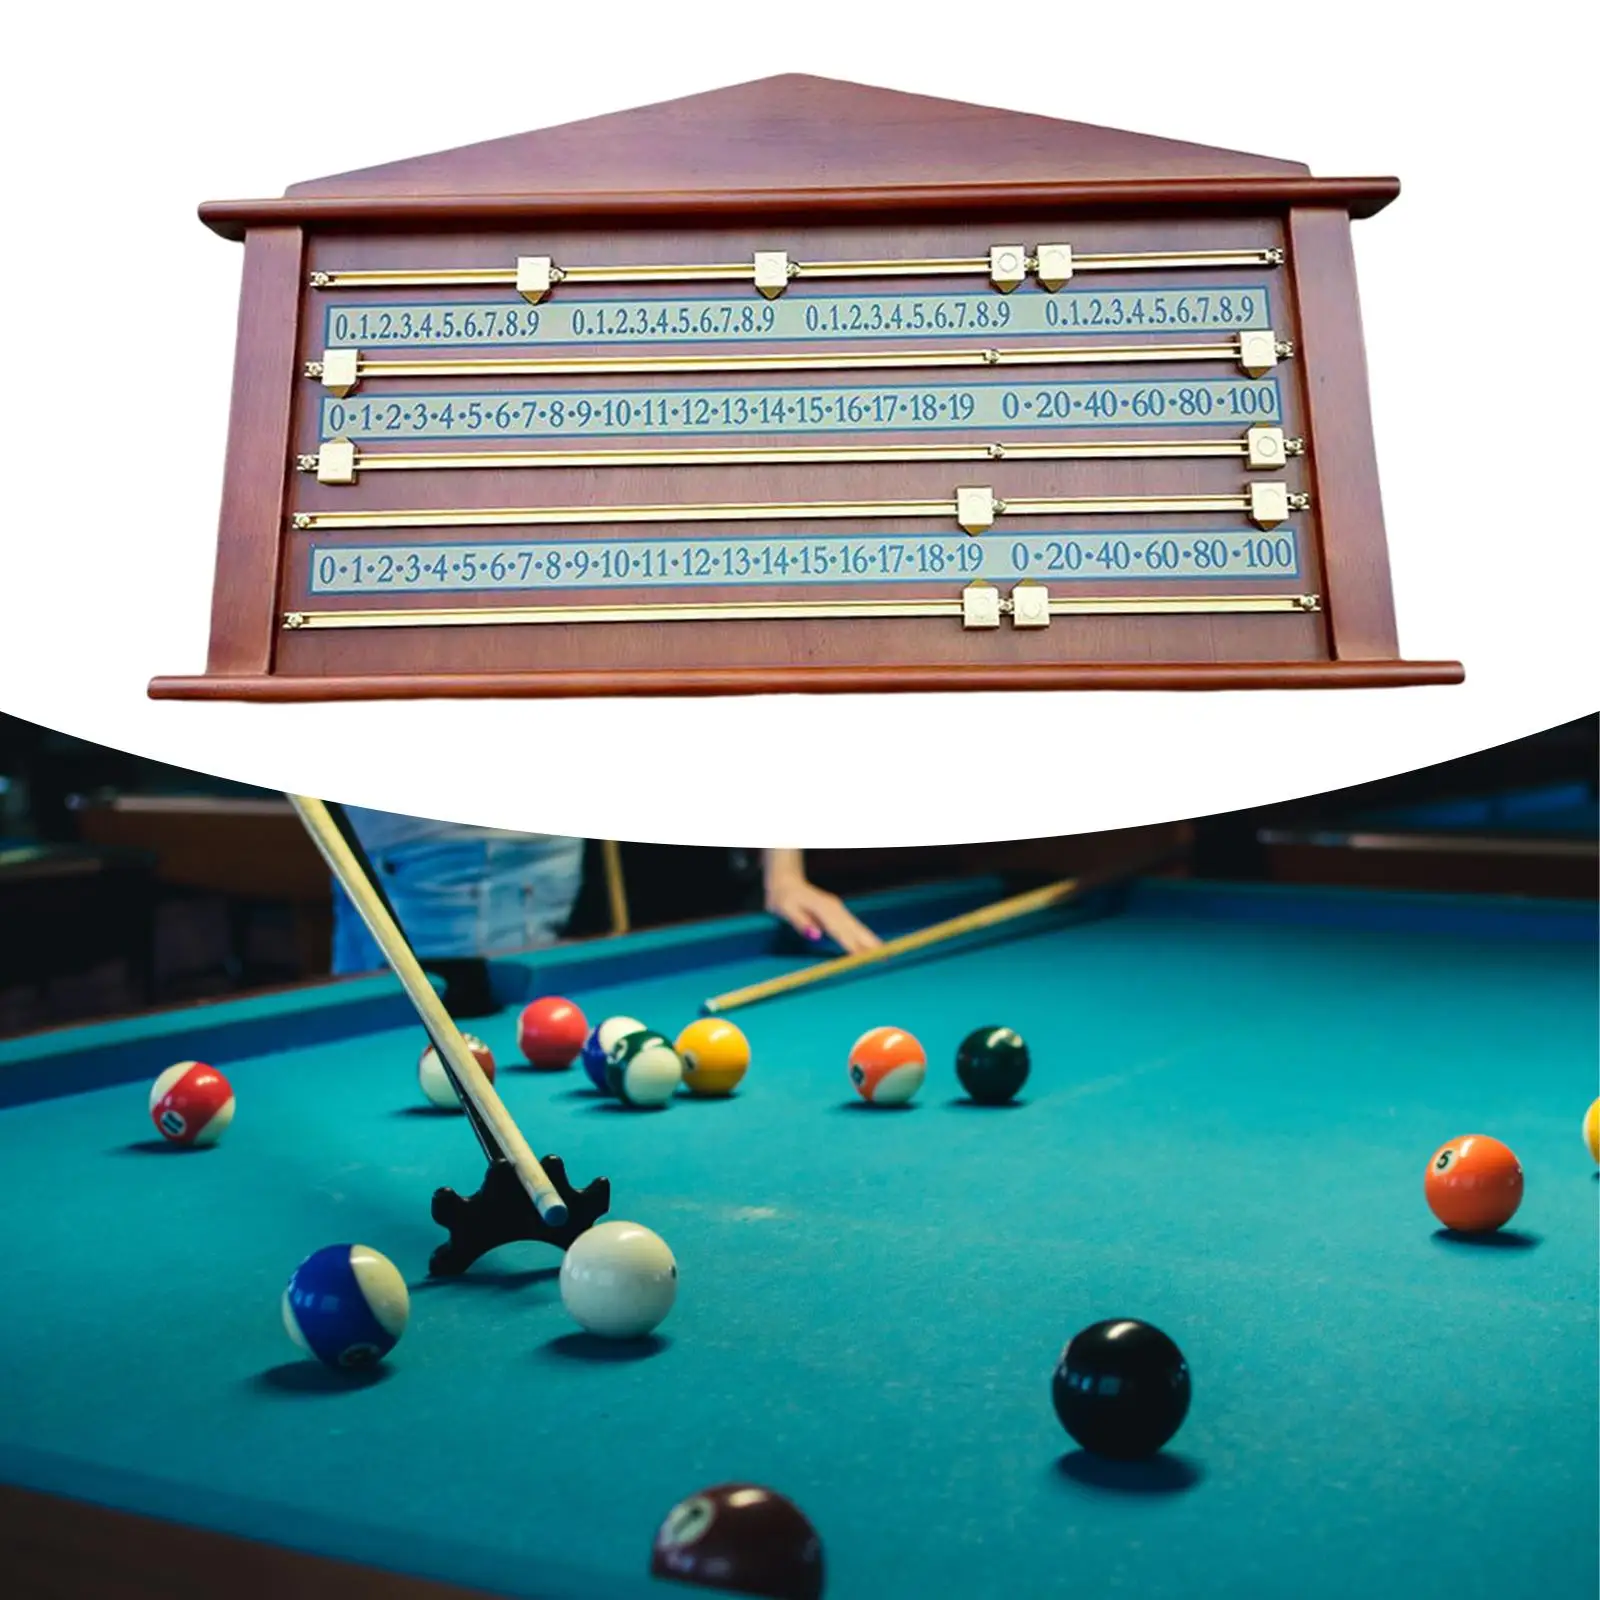 Wooden Snooker Billiard Score Board Accessories Device Counters Shuffleboard